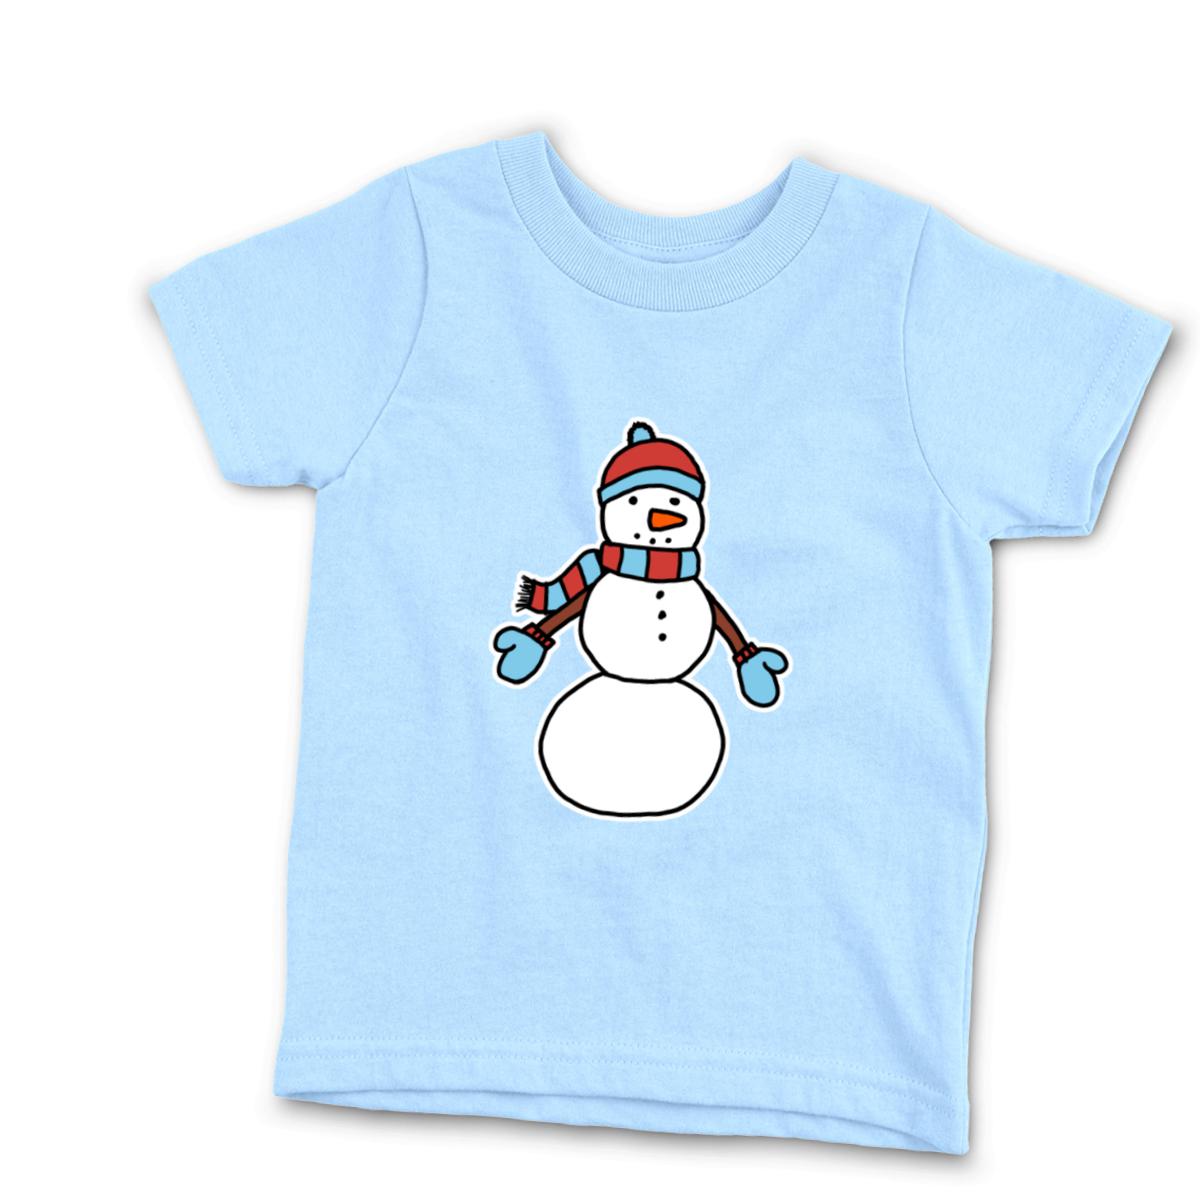 Snowman Bundled Up Kid's Tee Small light-blue